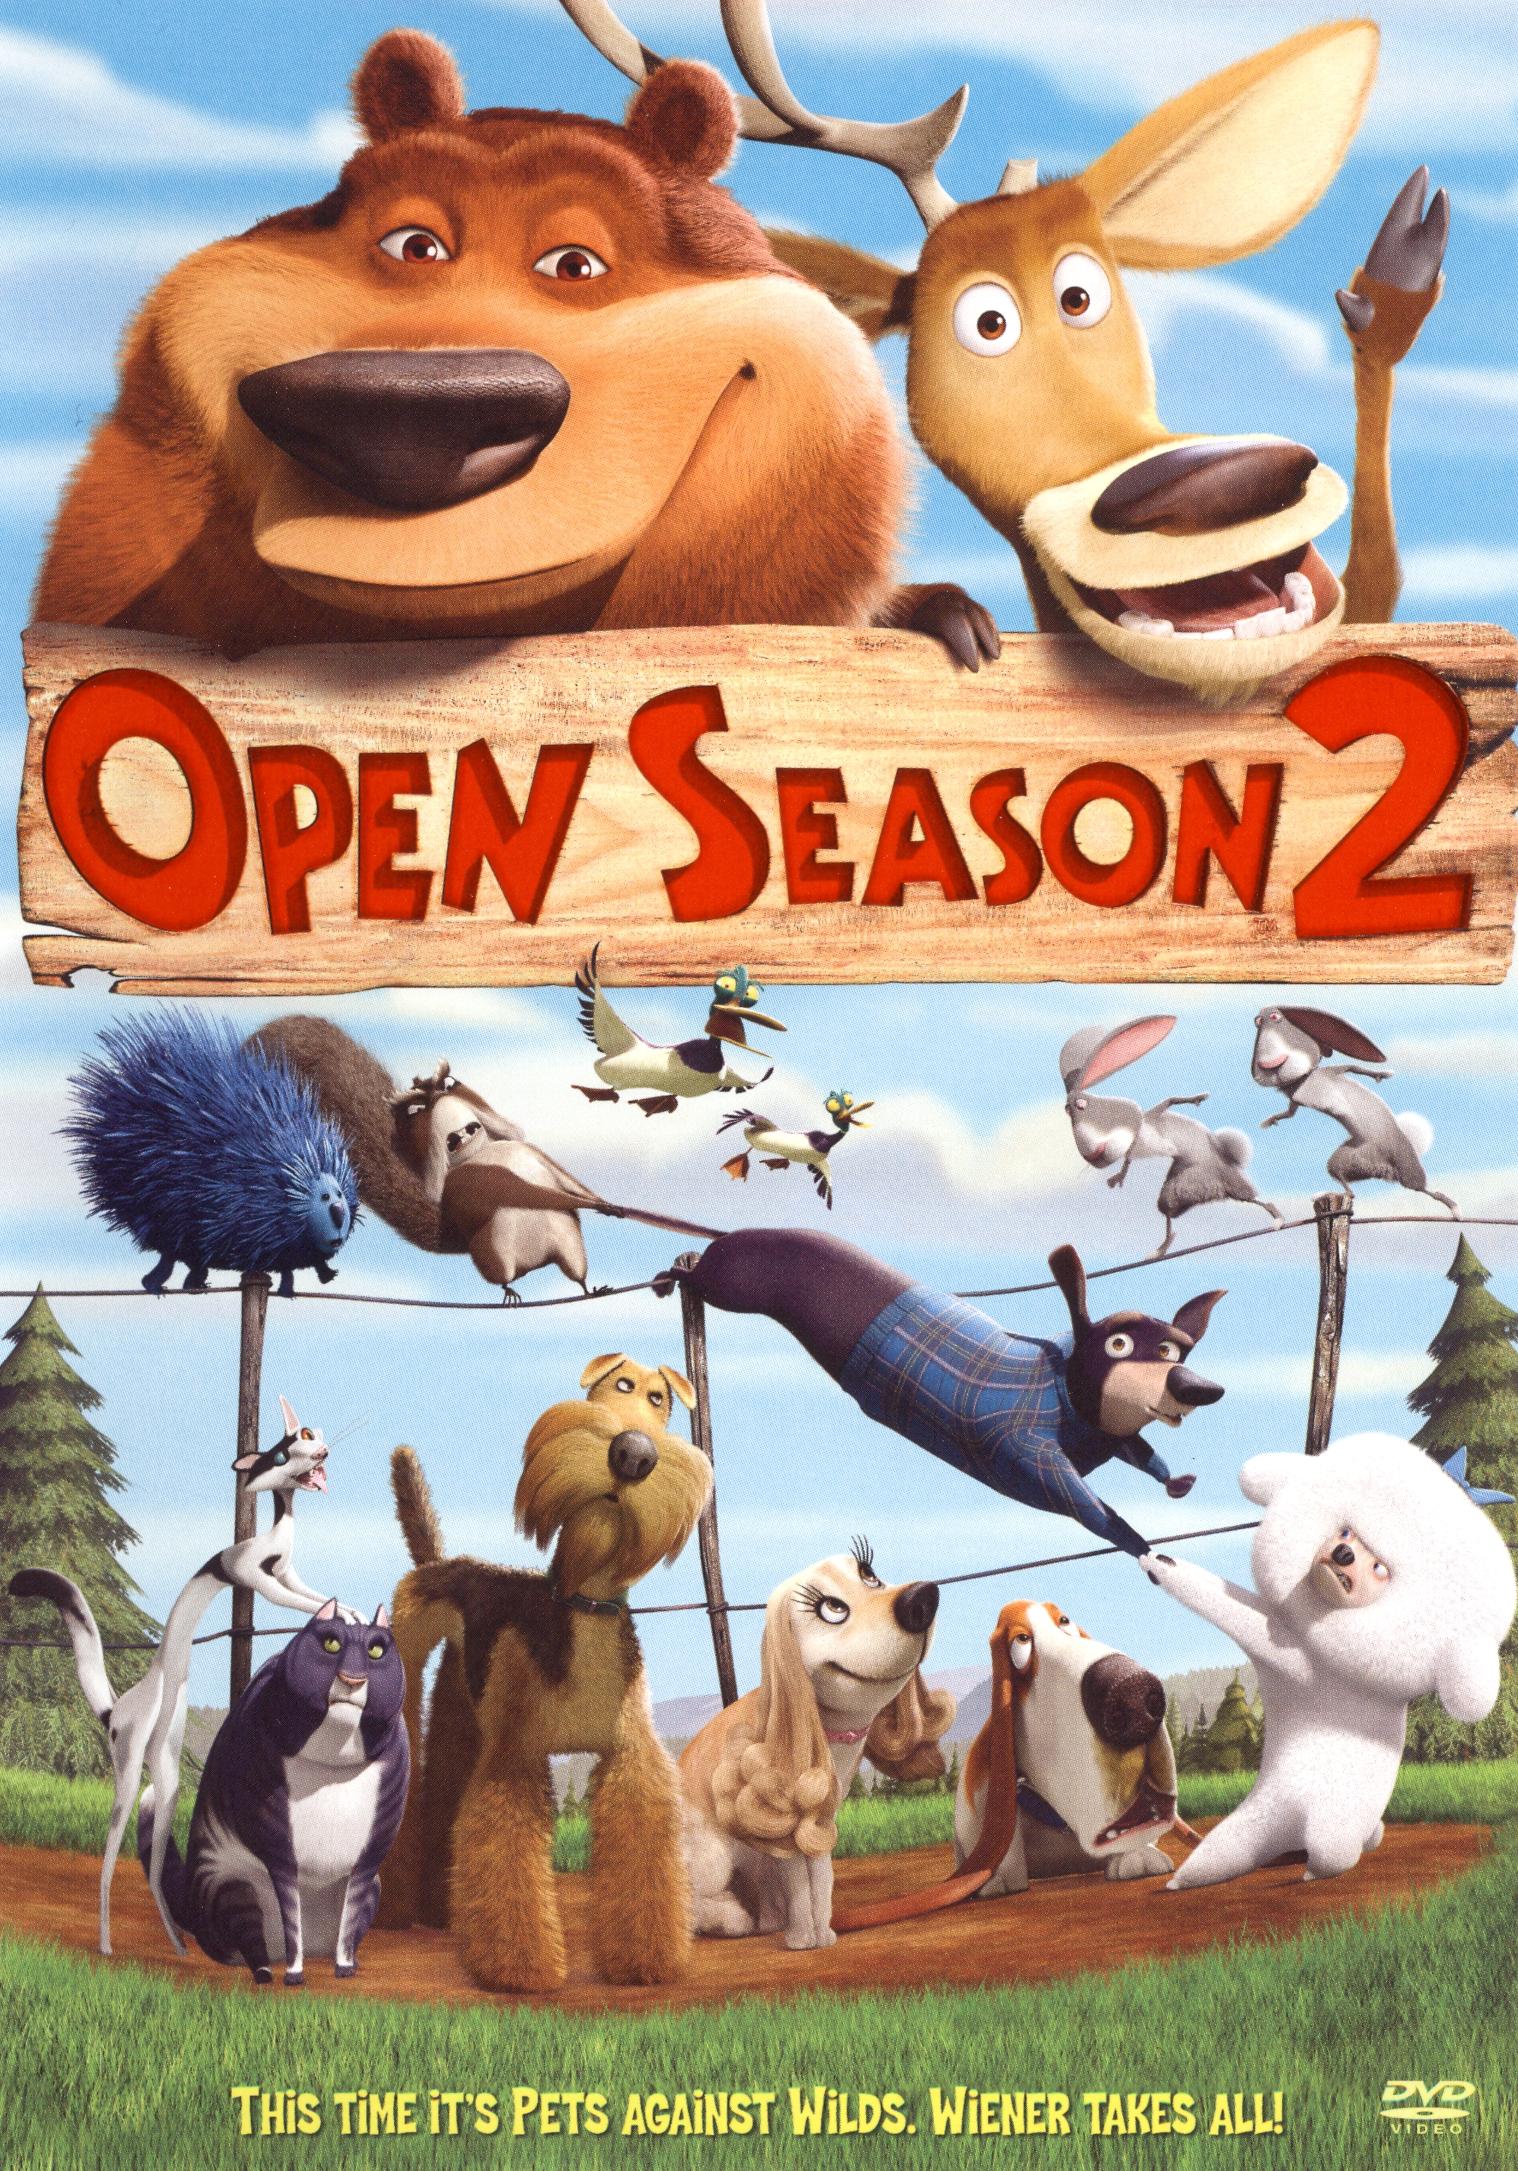 Open Season 2 [DVD] [2009] - Best Buy